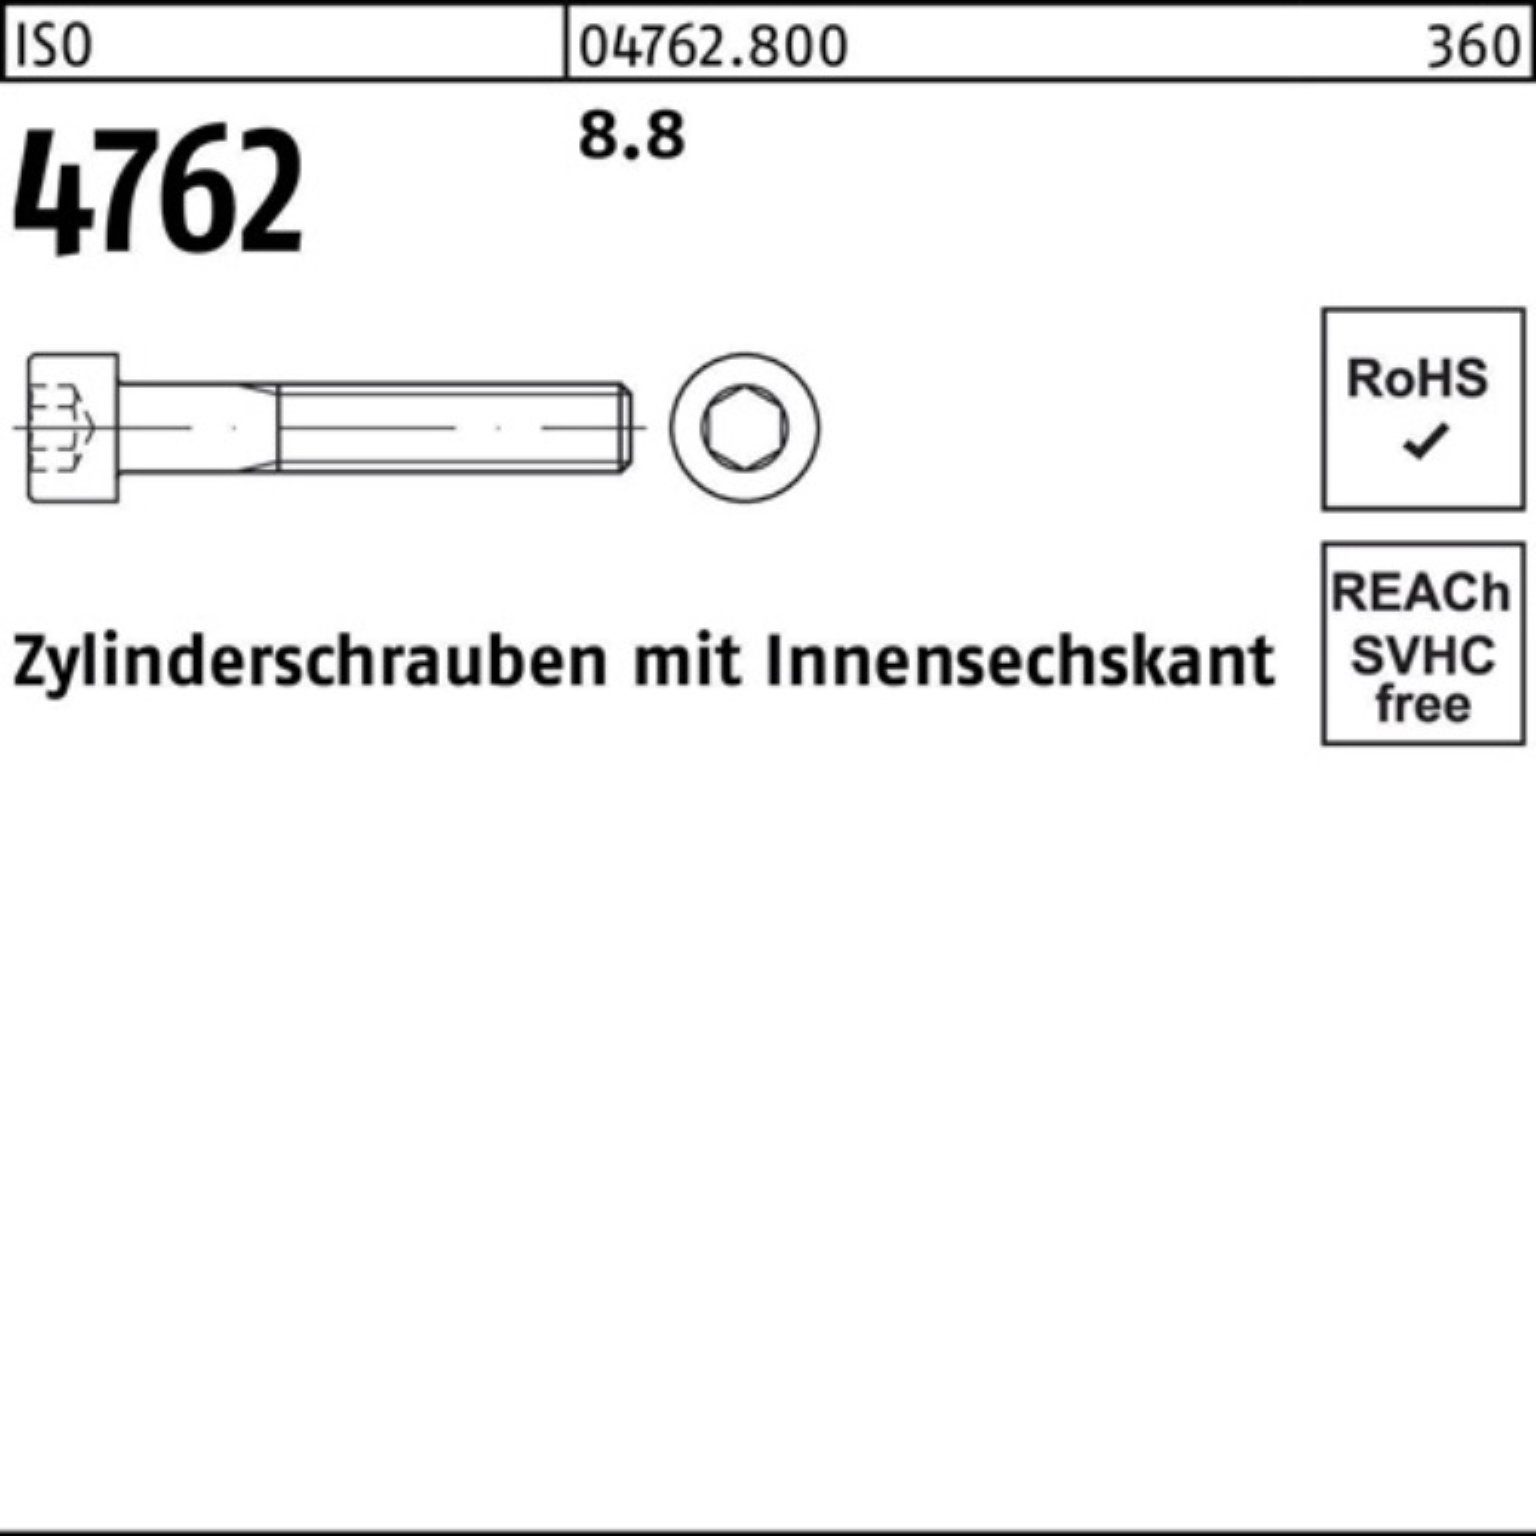 Zylinderschraube Innen-6kt I Pack Reyher 90 100er 100 M8x Stück 4762 ISO Zylinderschraube 8.8